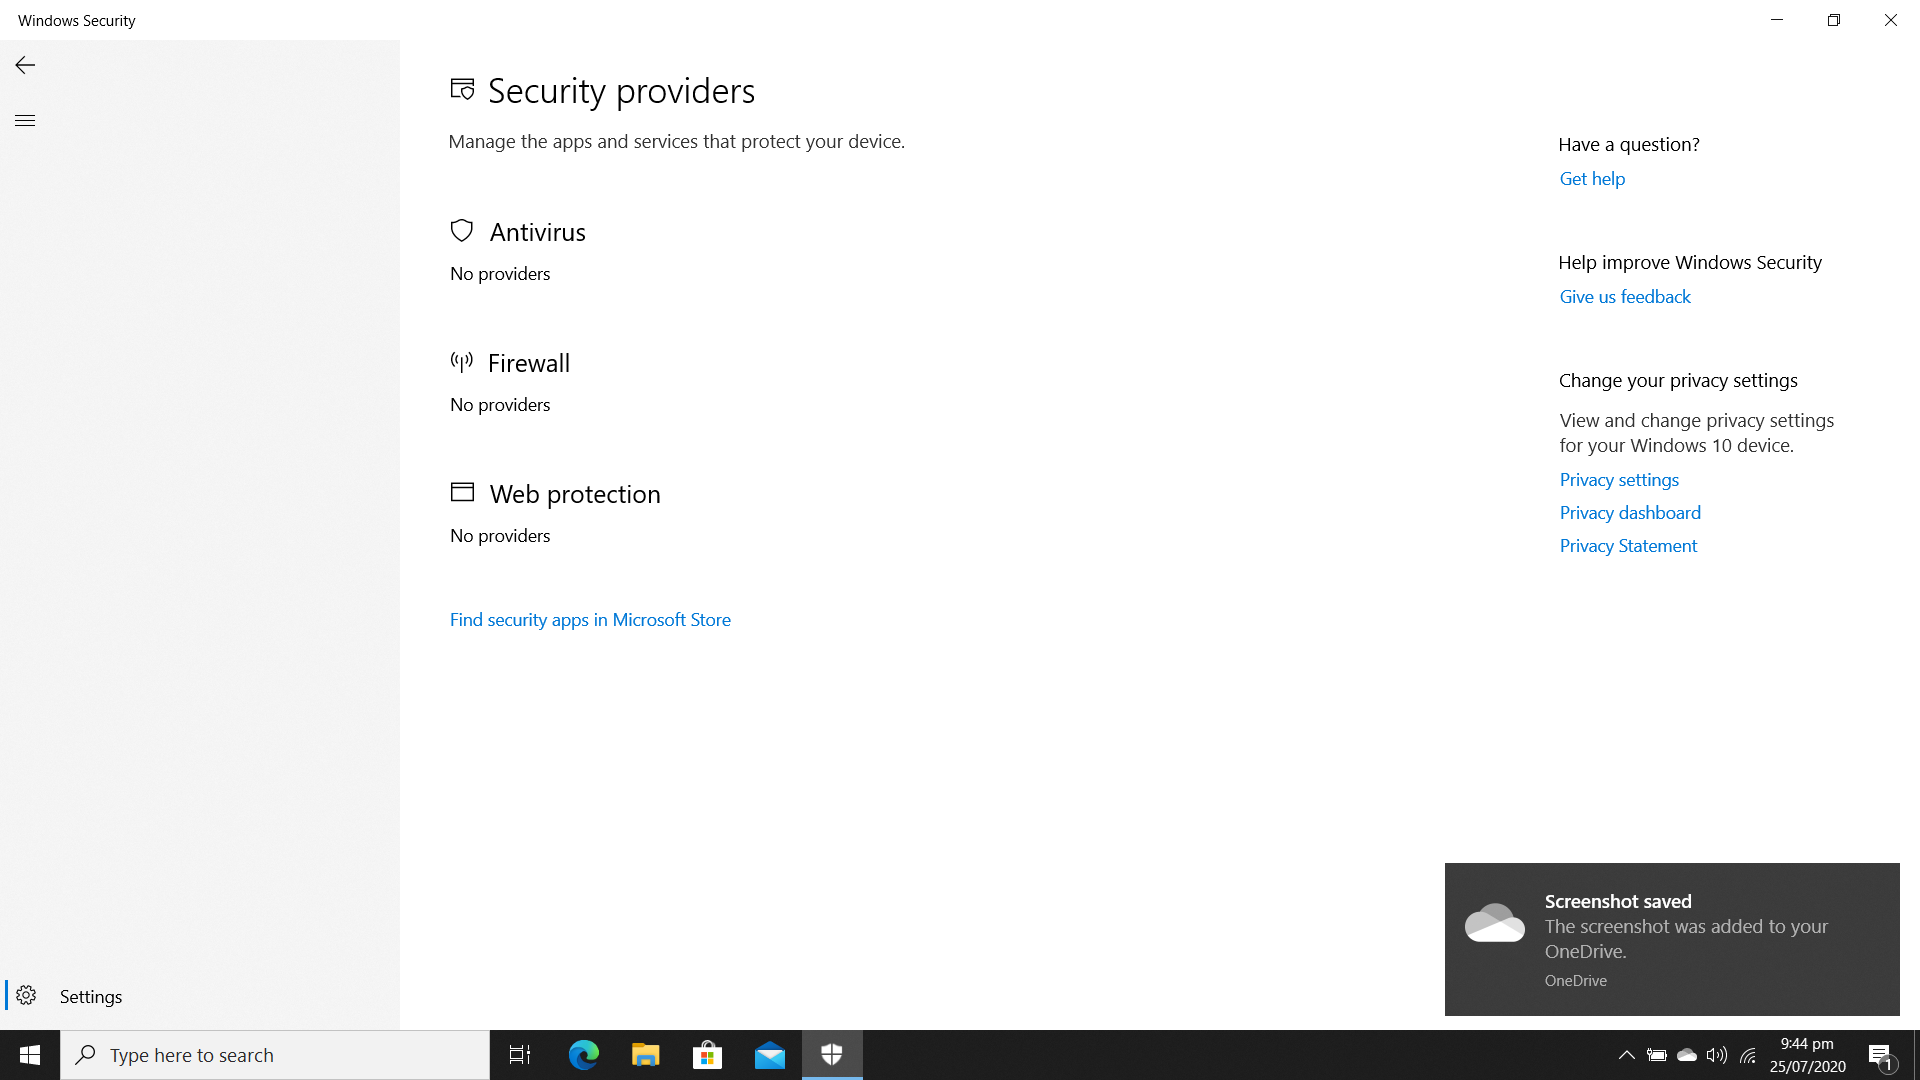 Microsoft Security Blank Screen 1df2b8e5-c9b0-4458-8431-fcbb0c2fa3c1?upload=true.png